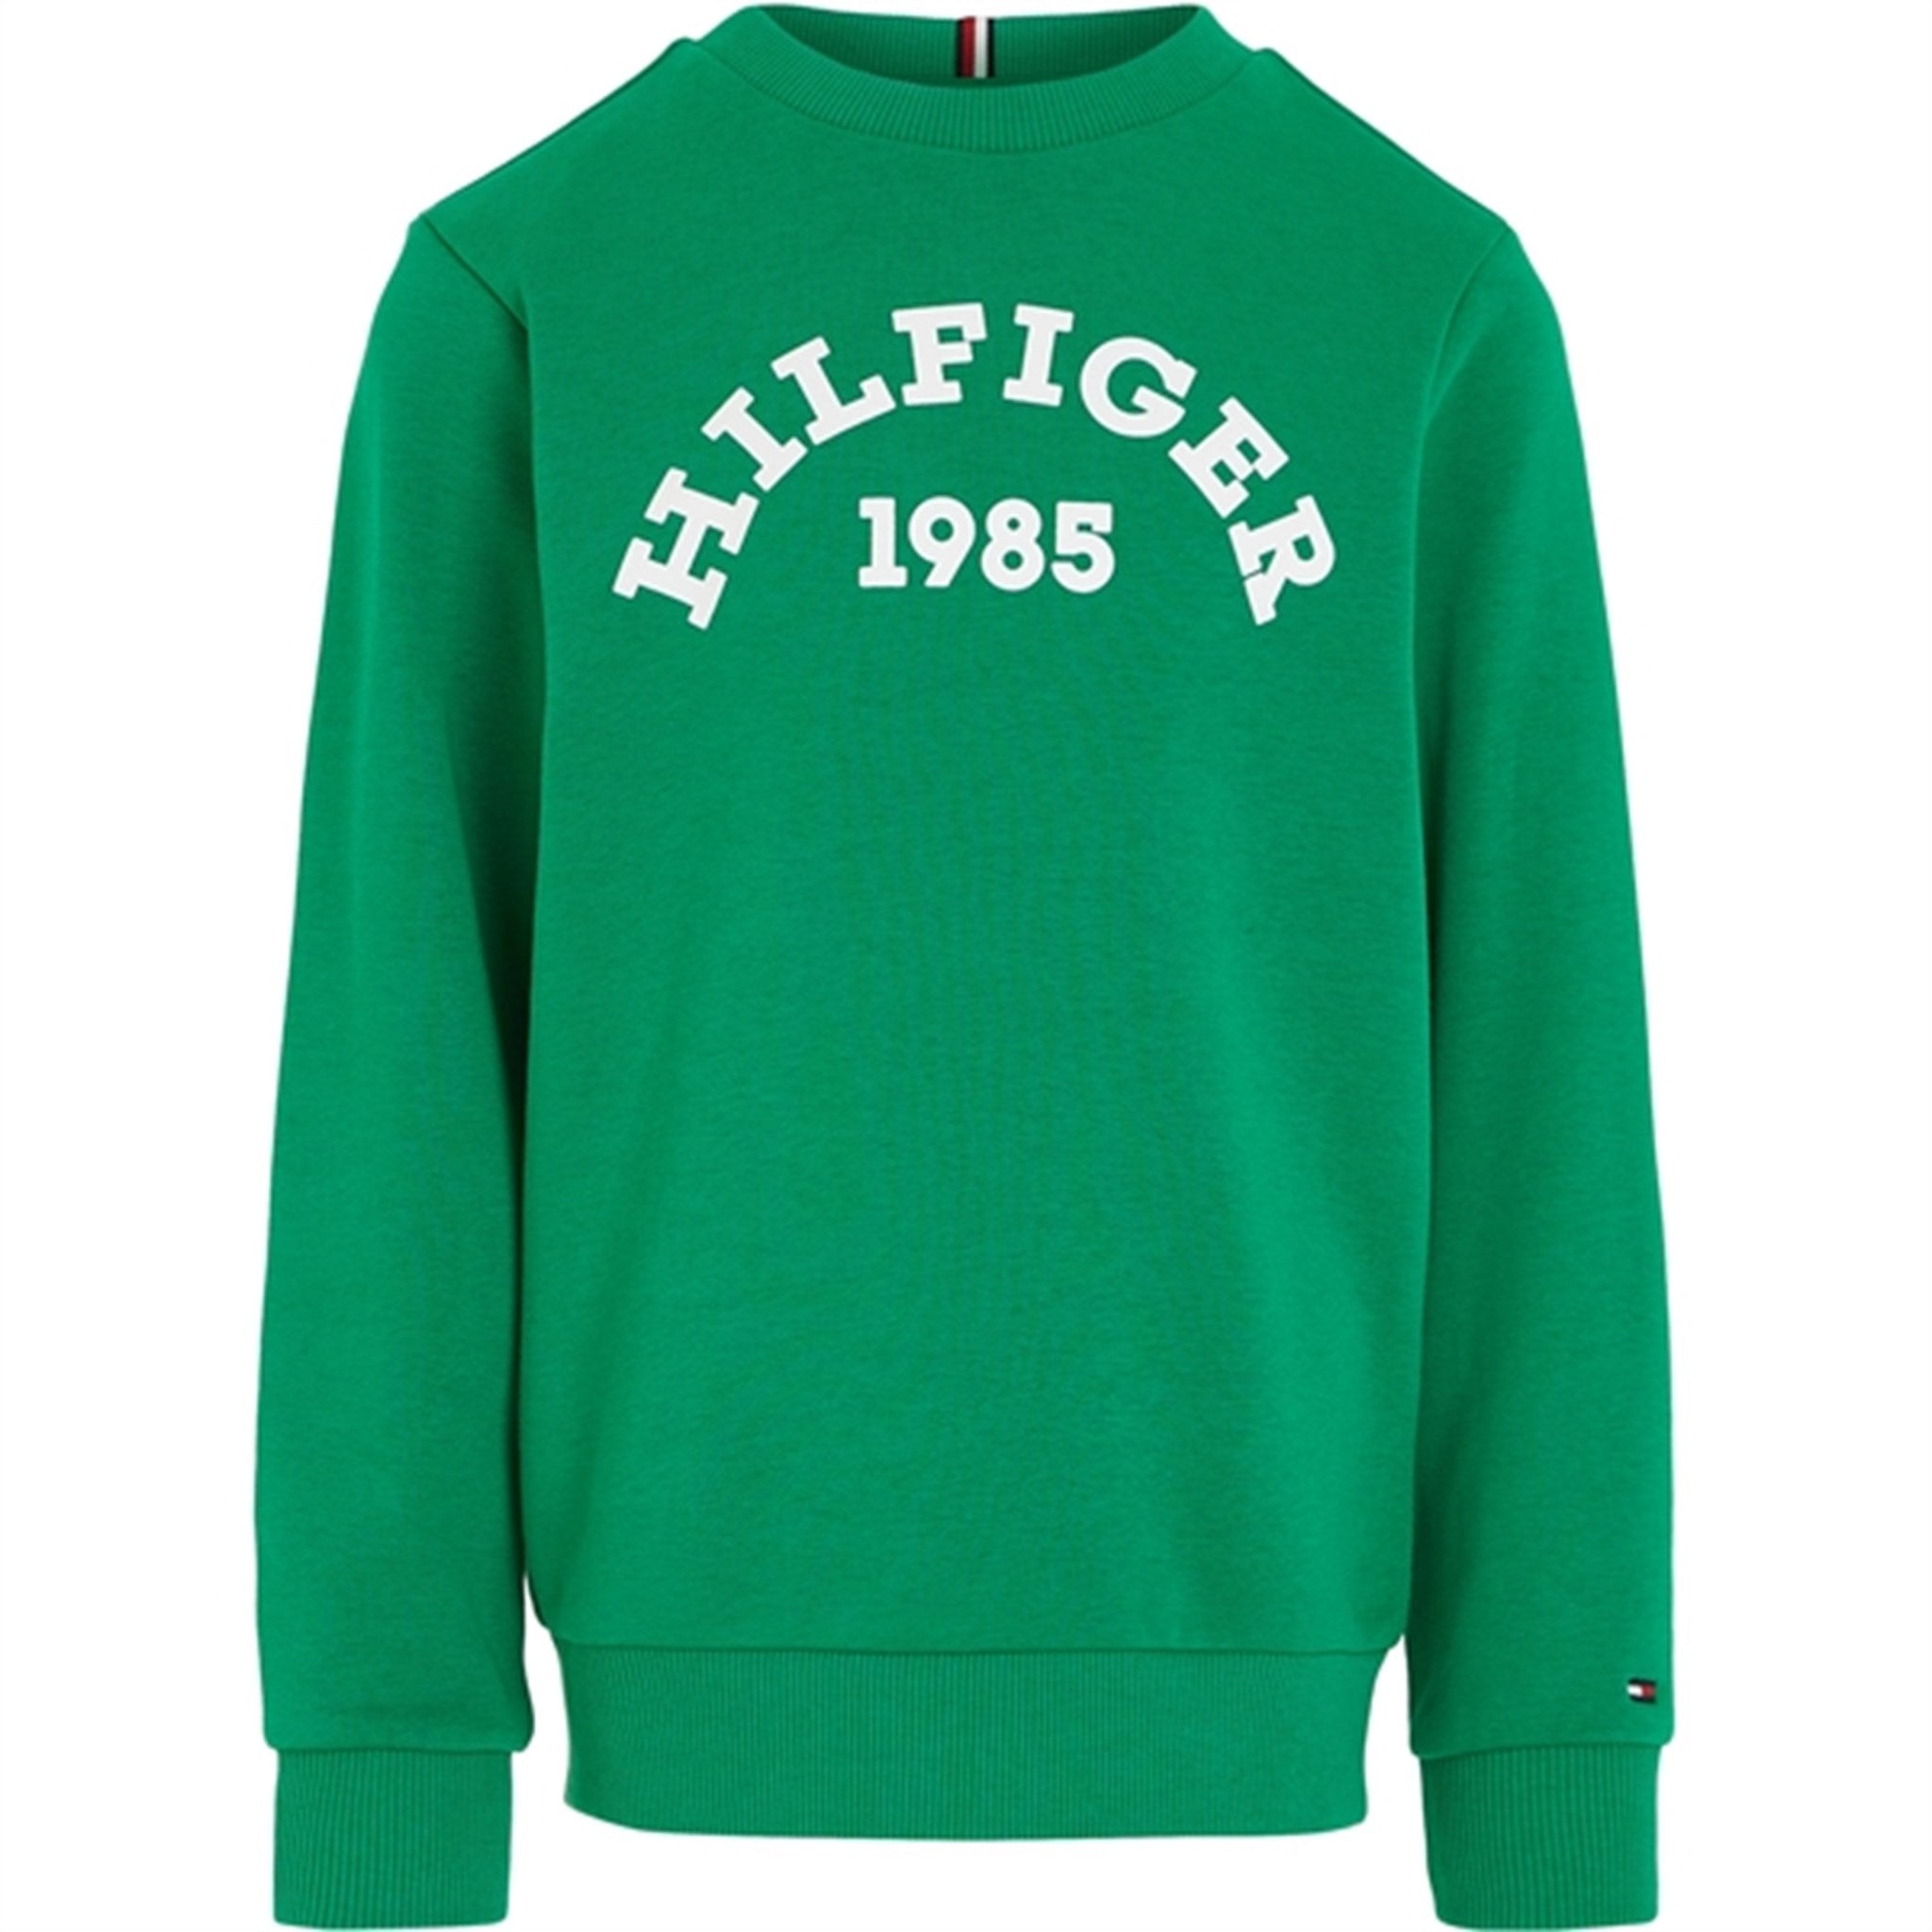 Tommy Hilfiger Hilfiger 1985 Sweatshirt Olympic Green - Str. 116 cm/6 år